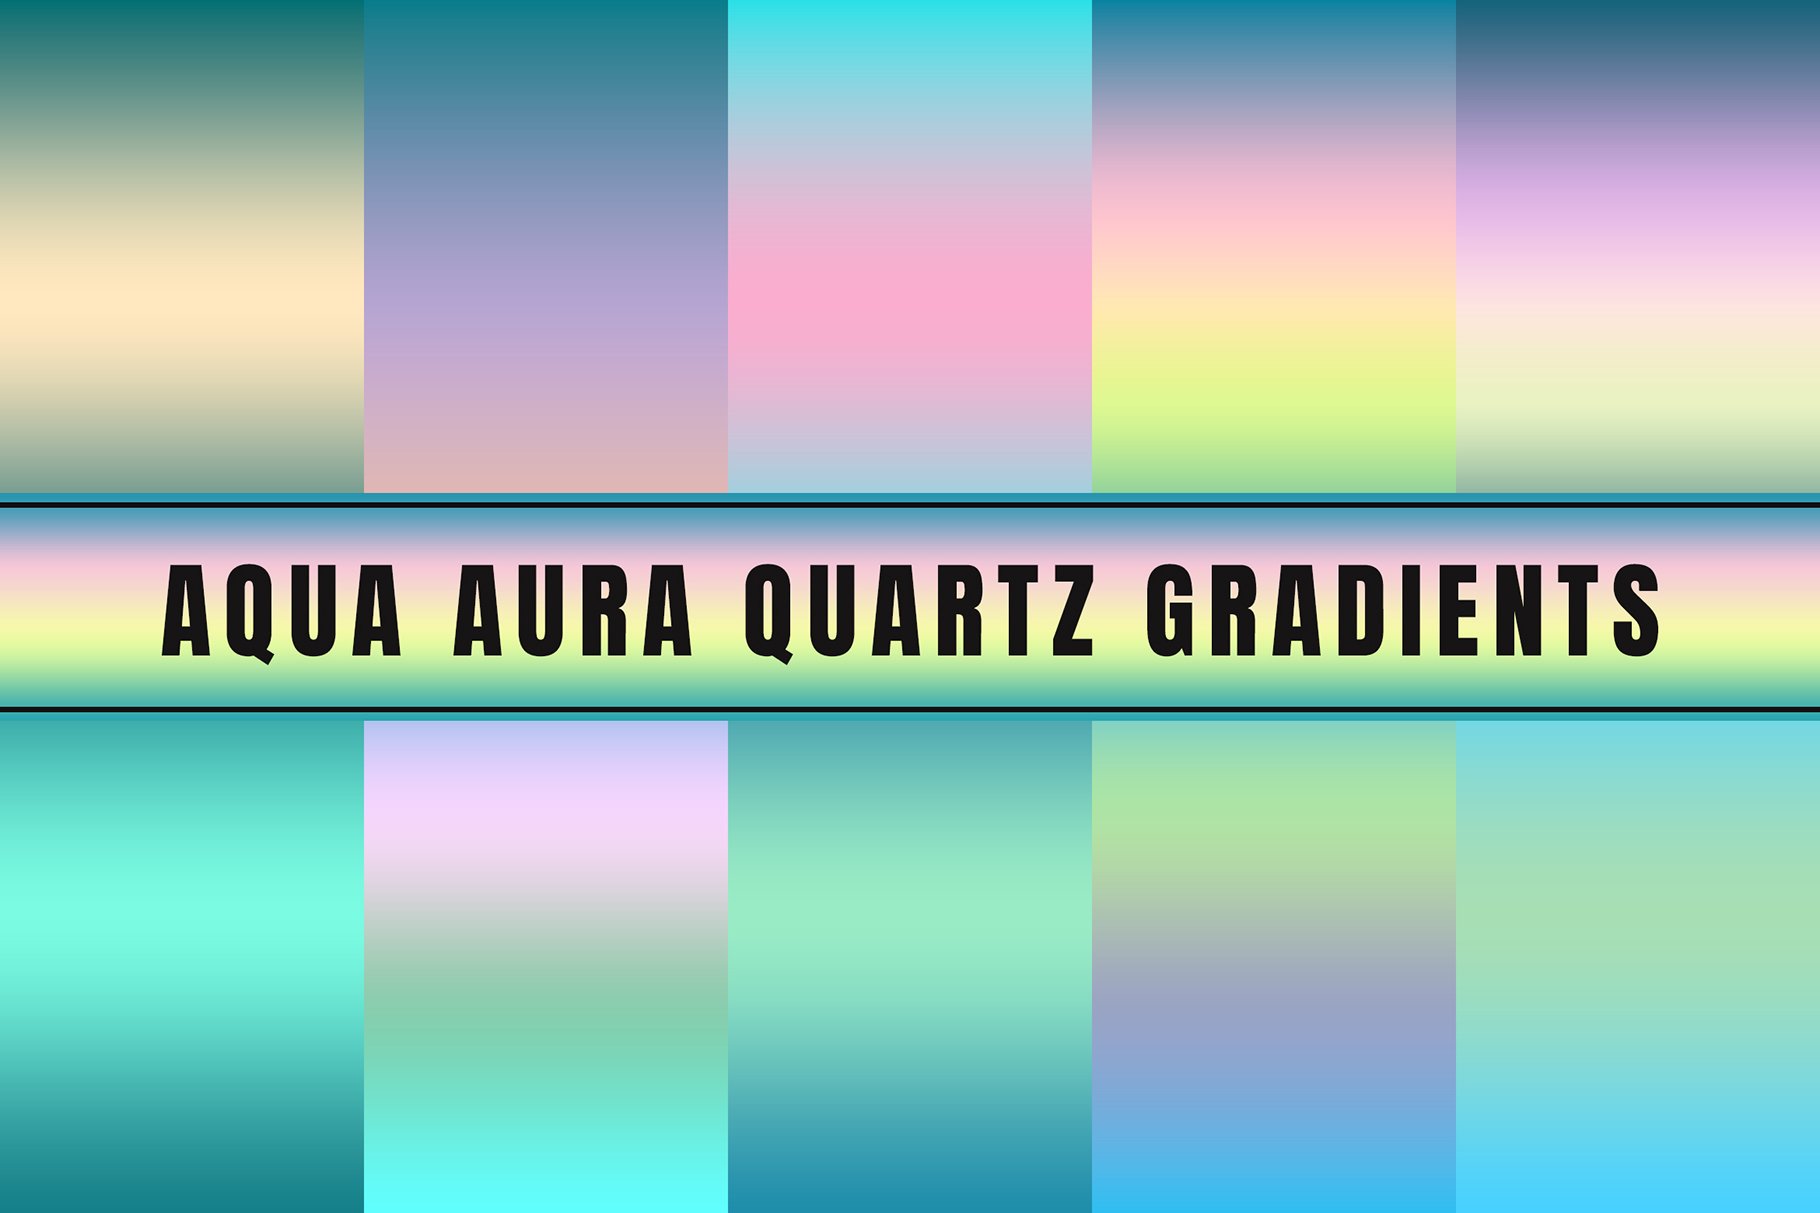 Aqua Aura Quartz Gradients cover image.